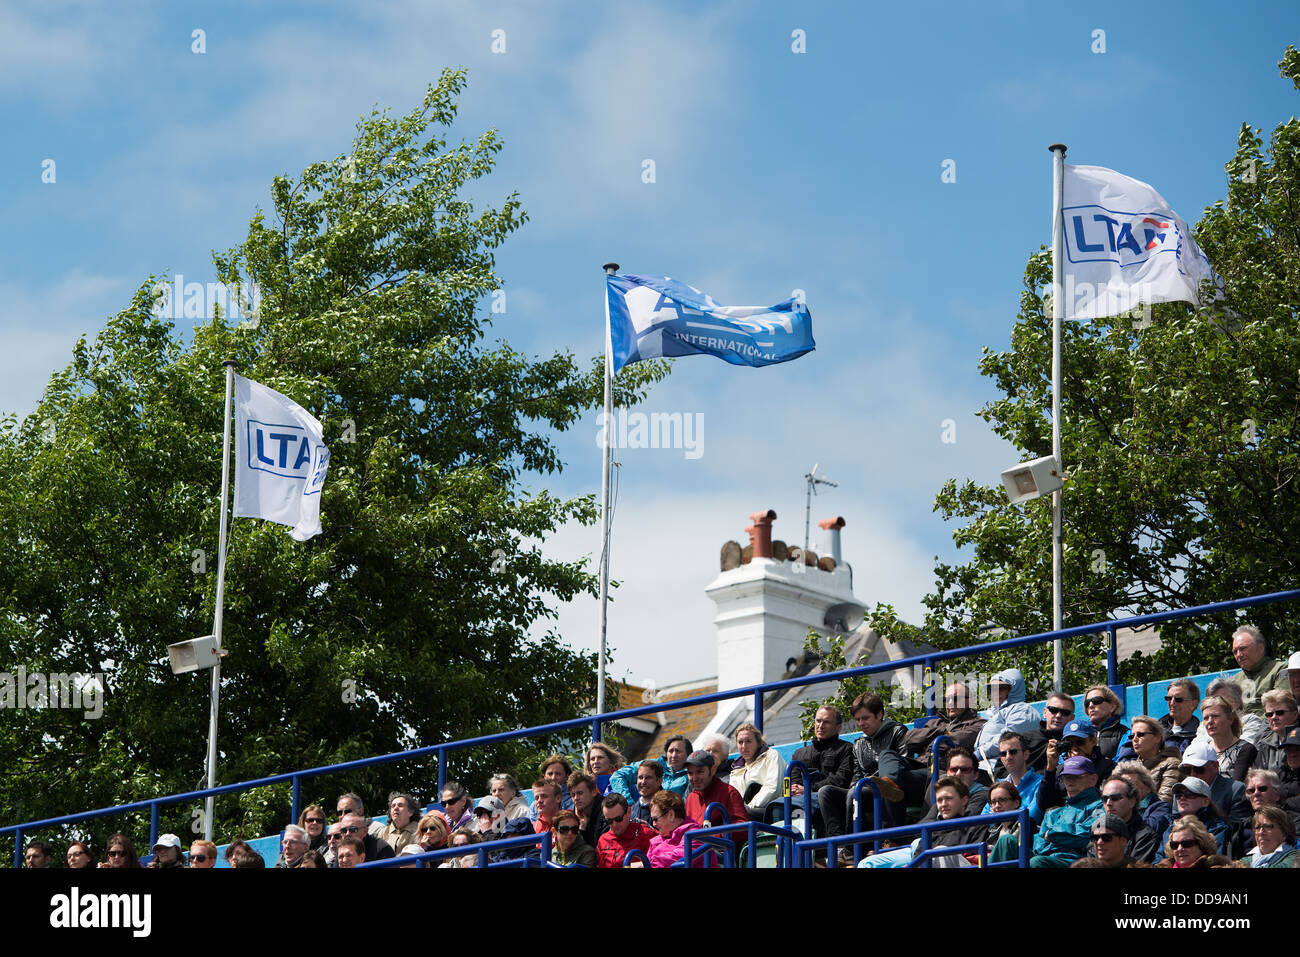 L'ALT et drapeau Aegon flottent dans le vent au-dessus de spectateurs sur une journée à la étés breezy Aegon tournoi de tennis international Banque D'Images